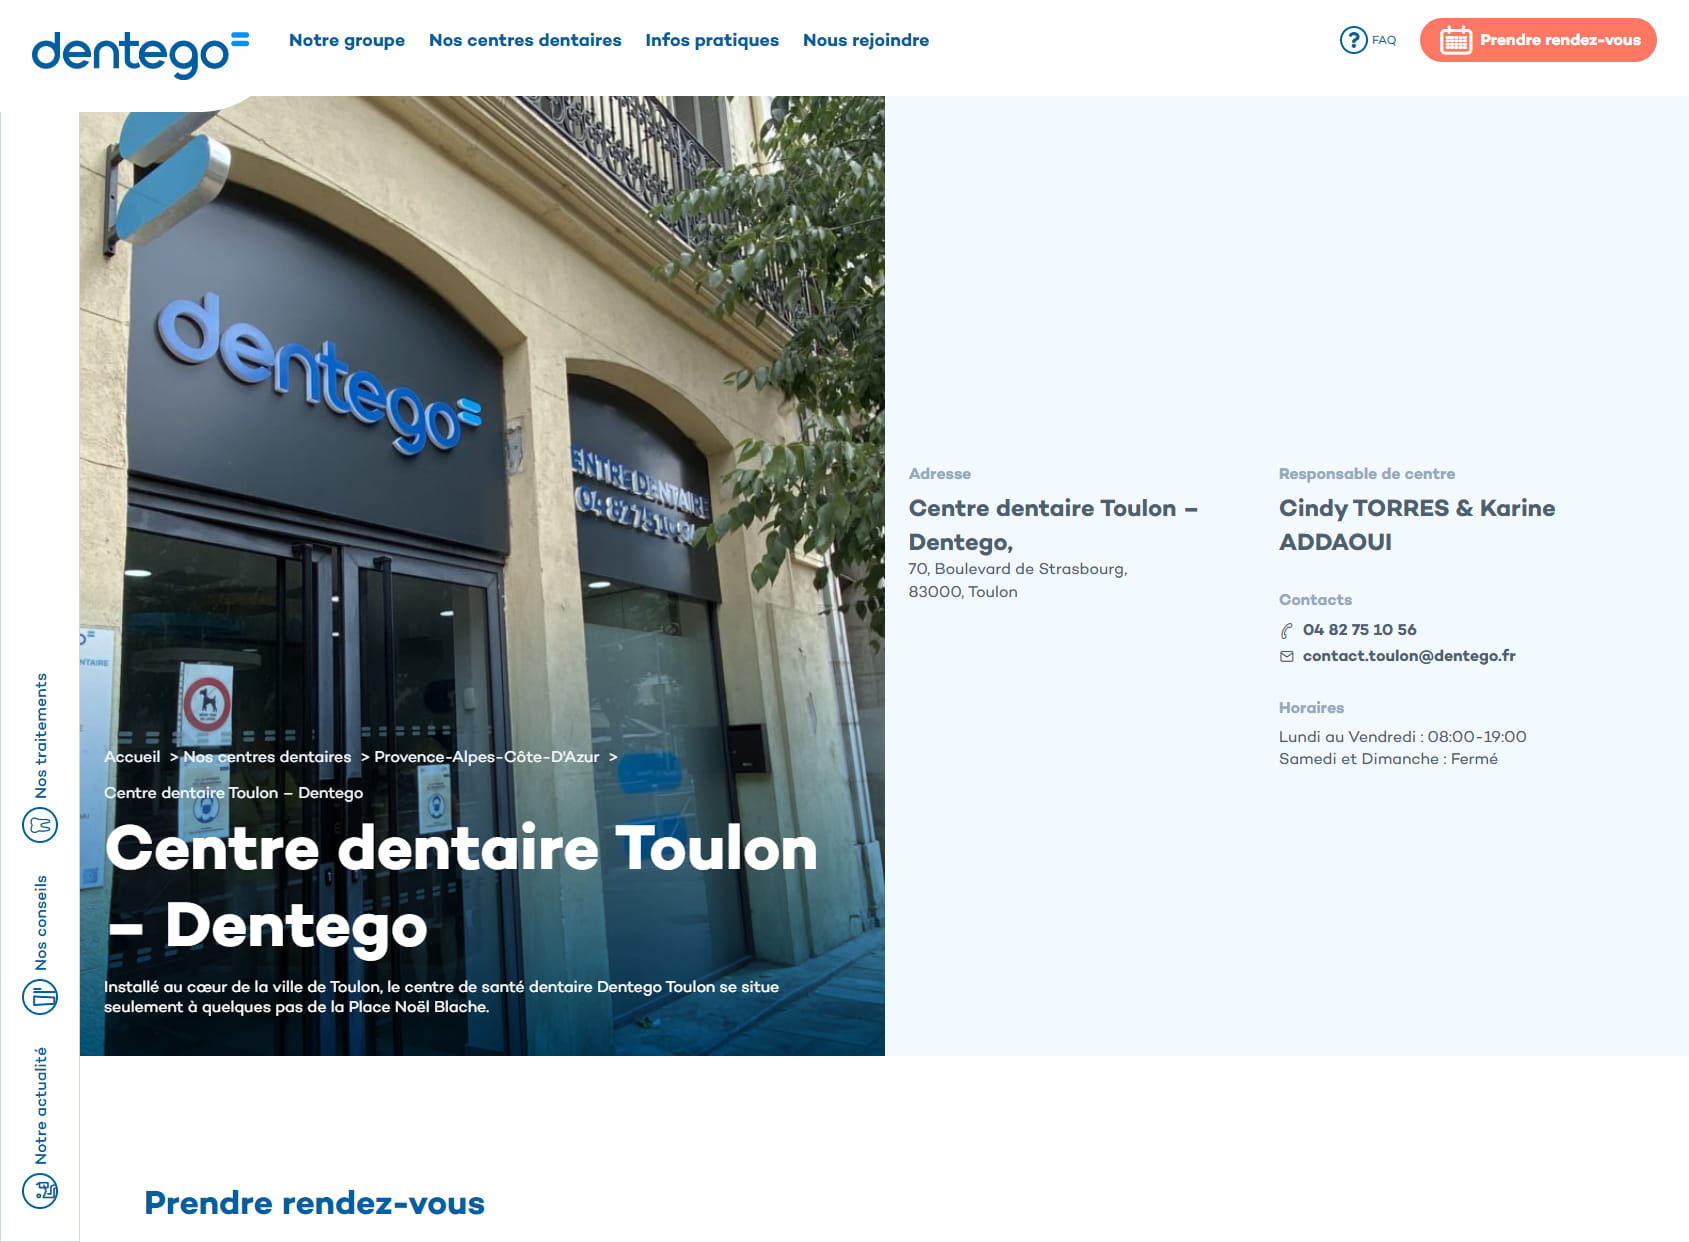 Centre Dentaire Toulon : Dentiste Toulon - Dentego